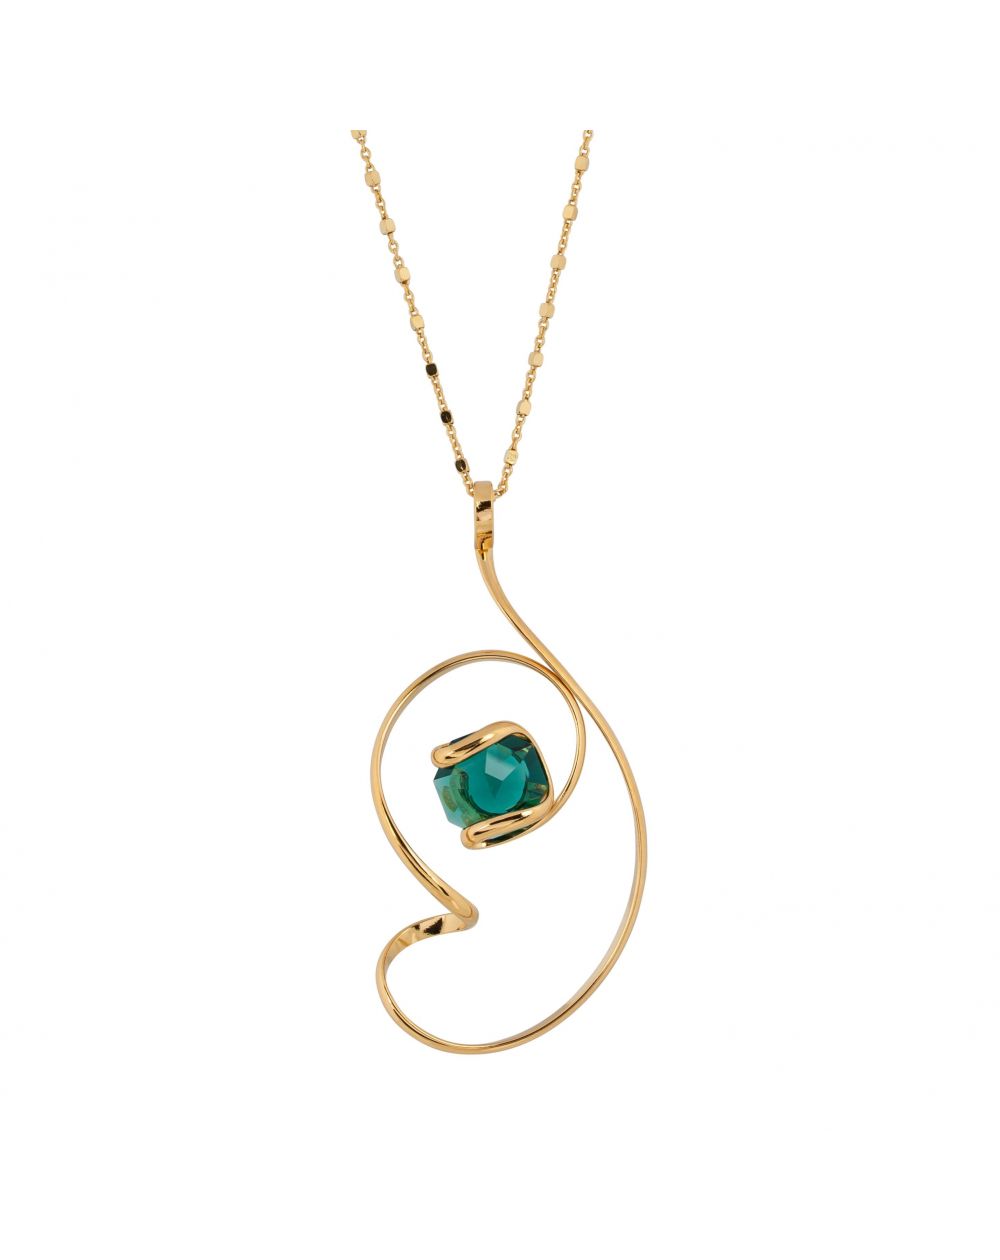 Collier Andrea Marazzini, pierre Swarovski Octagon Emerald